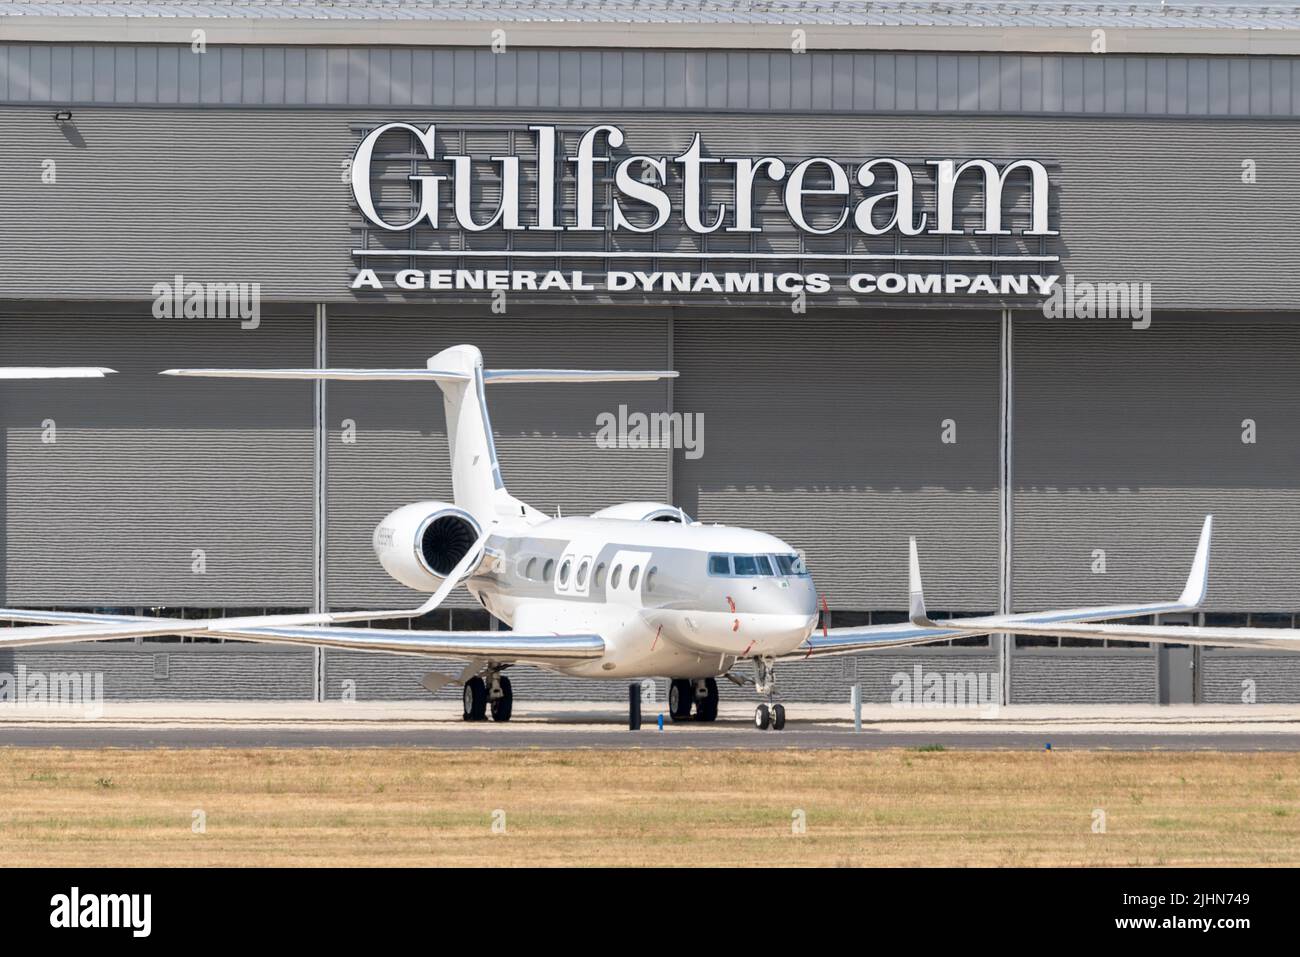 Gulfstream MRO Hangar, aeroporto di Farnborough, Hampshire, Regno Unito. Jet privato parcheggiato all'esterno. Manutenzione, riparazione e operazioni hangar di VolkerFitzpatrick Foto Stock